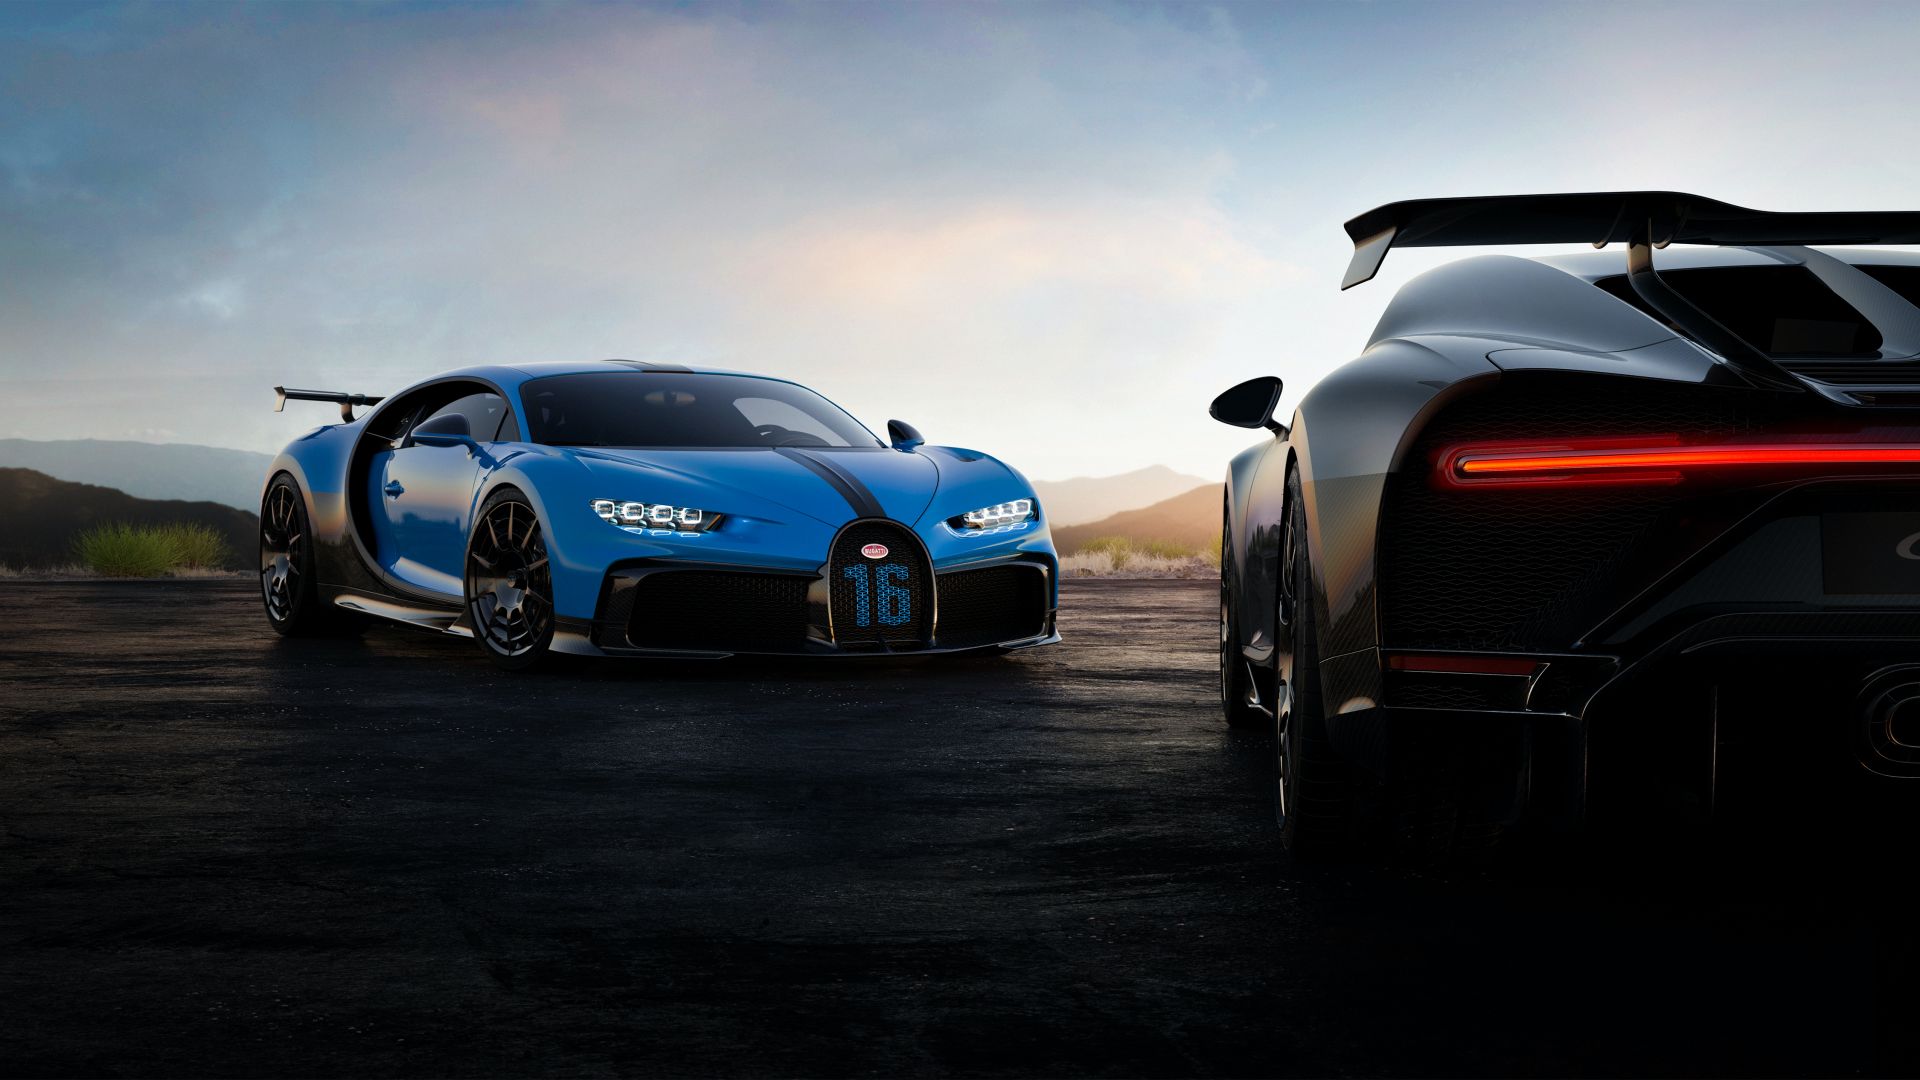 Ra mắt xe thời Covid-19: Dàn lãnh đạo Bugatti chào hàng siêu phẩm Chiron Pur Sport mới - Ảnh 3.